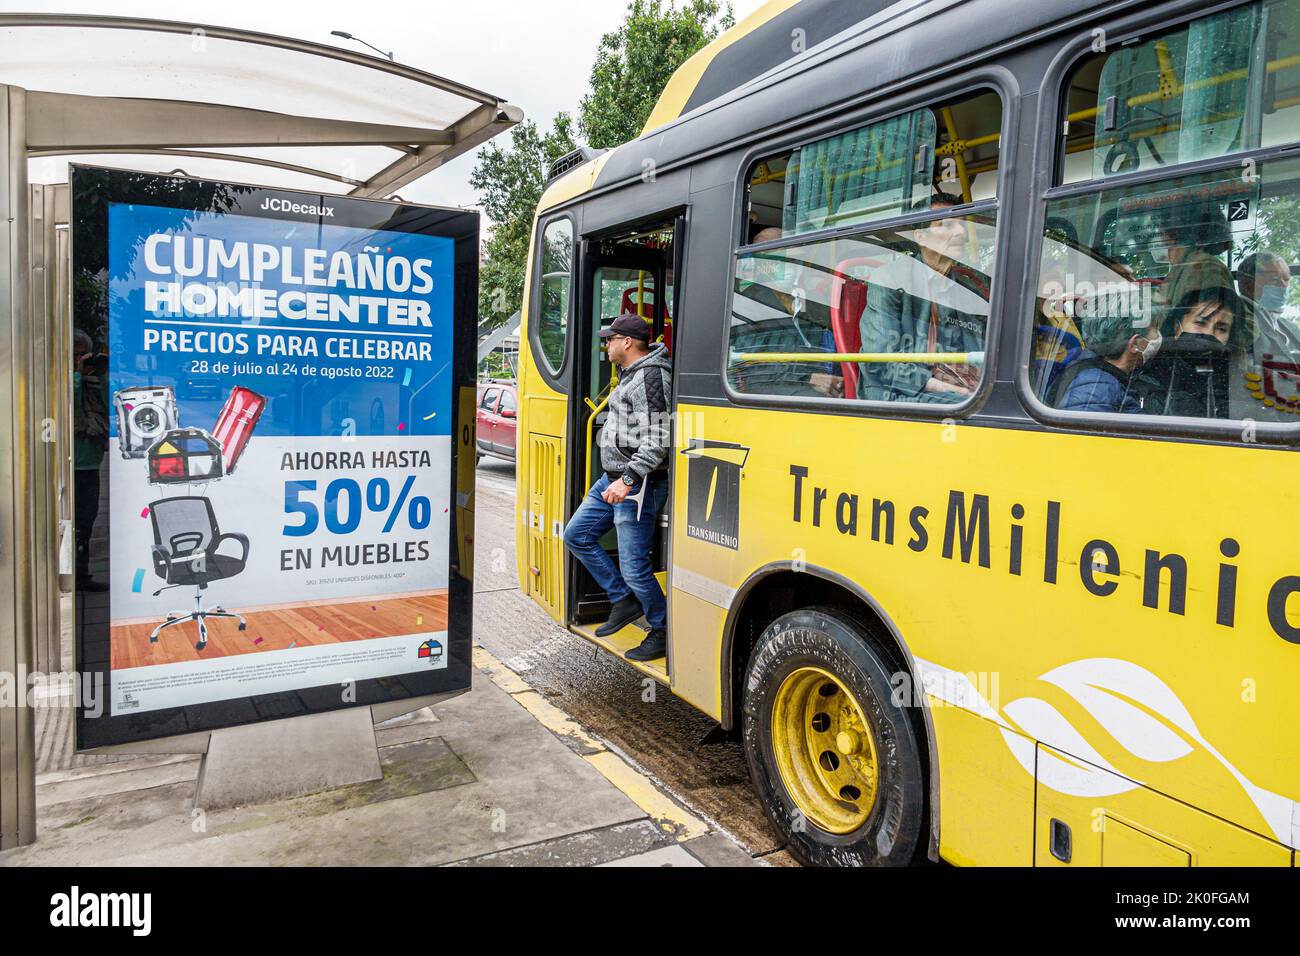 Bogotá Colombia, Avenida El Dorado Calle 26, parada de autobús anunciando cartel de cartelera Homecenter tienda de muebles aniversario venta descuento ahorros 50%, transm Foto de stock